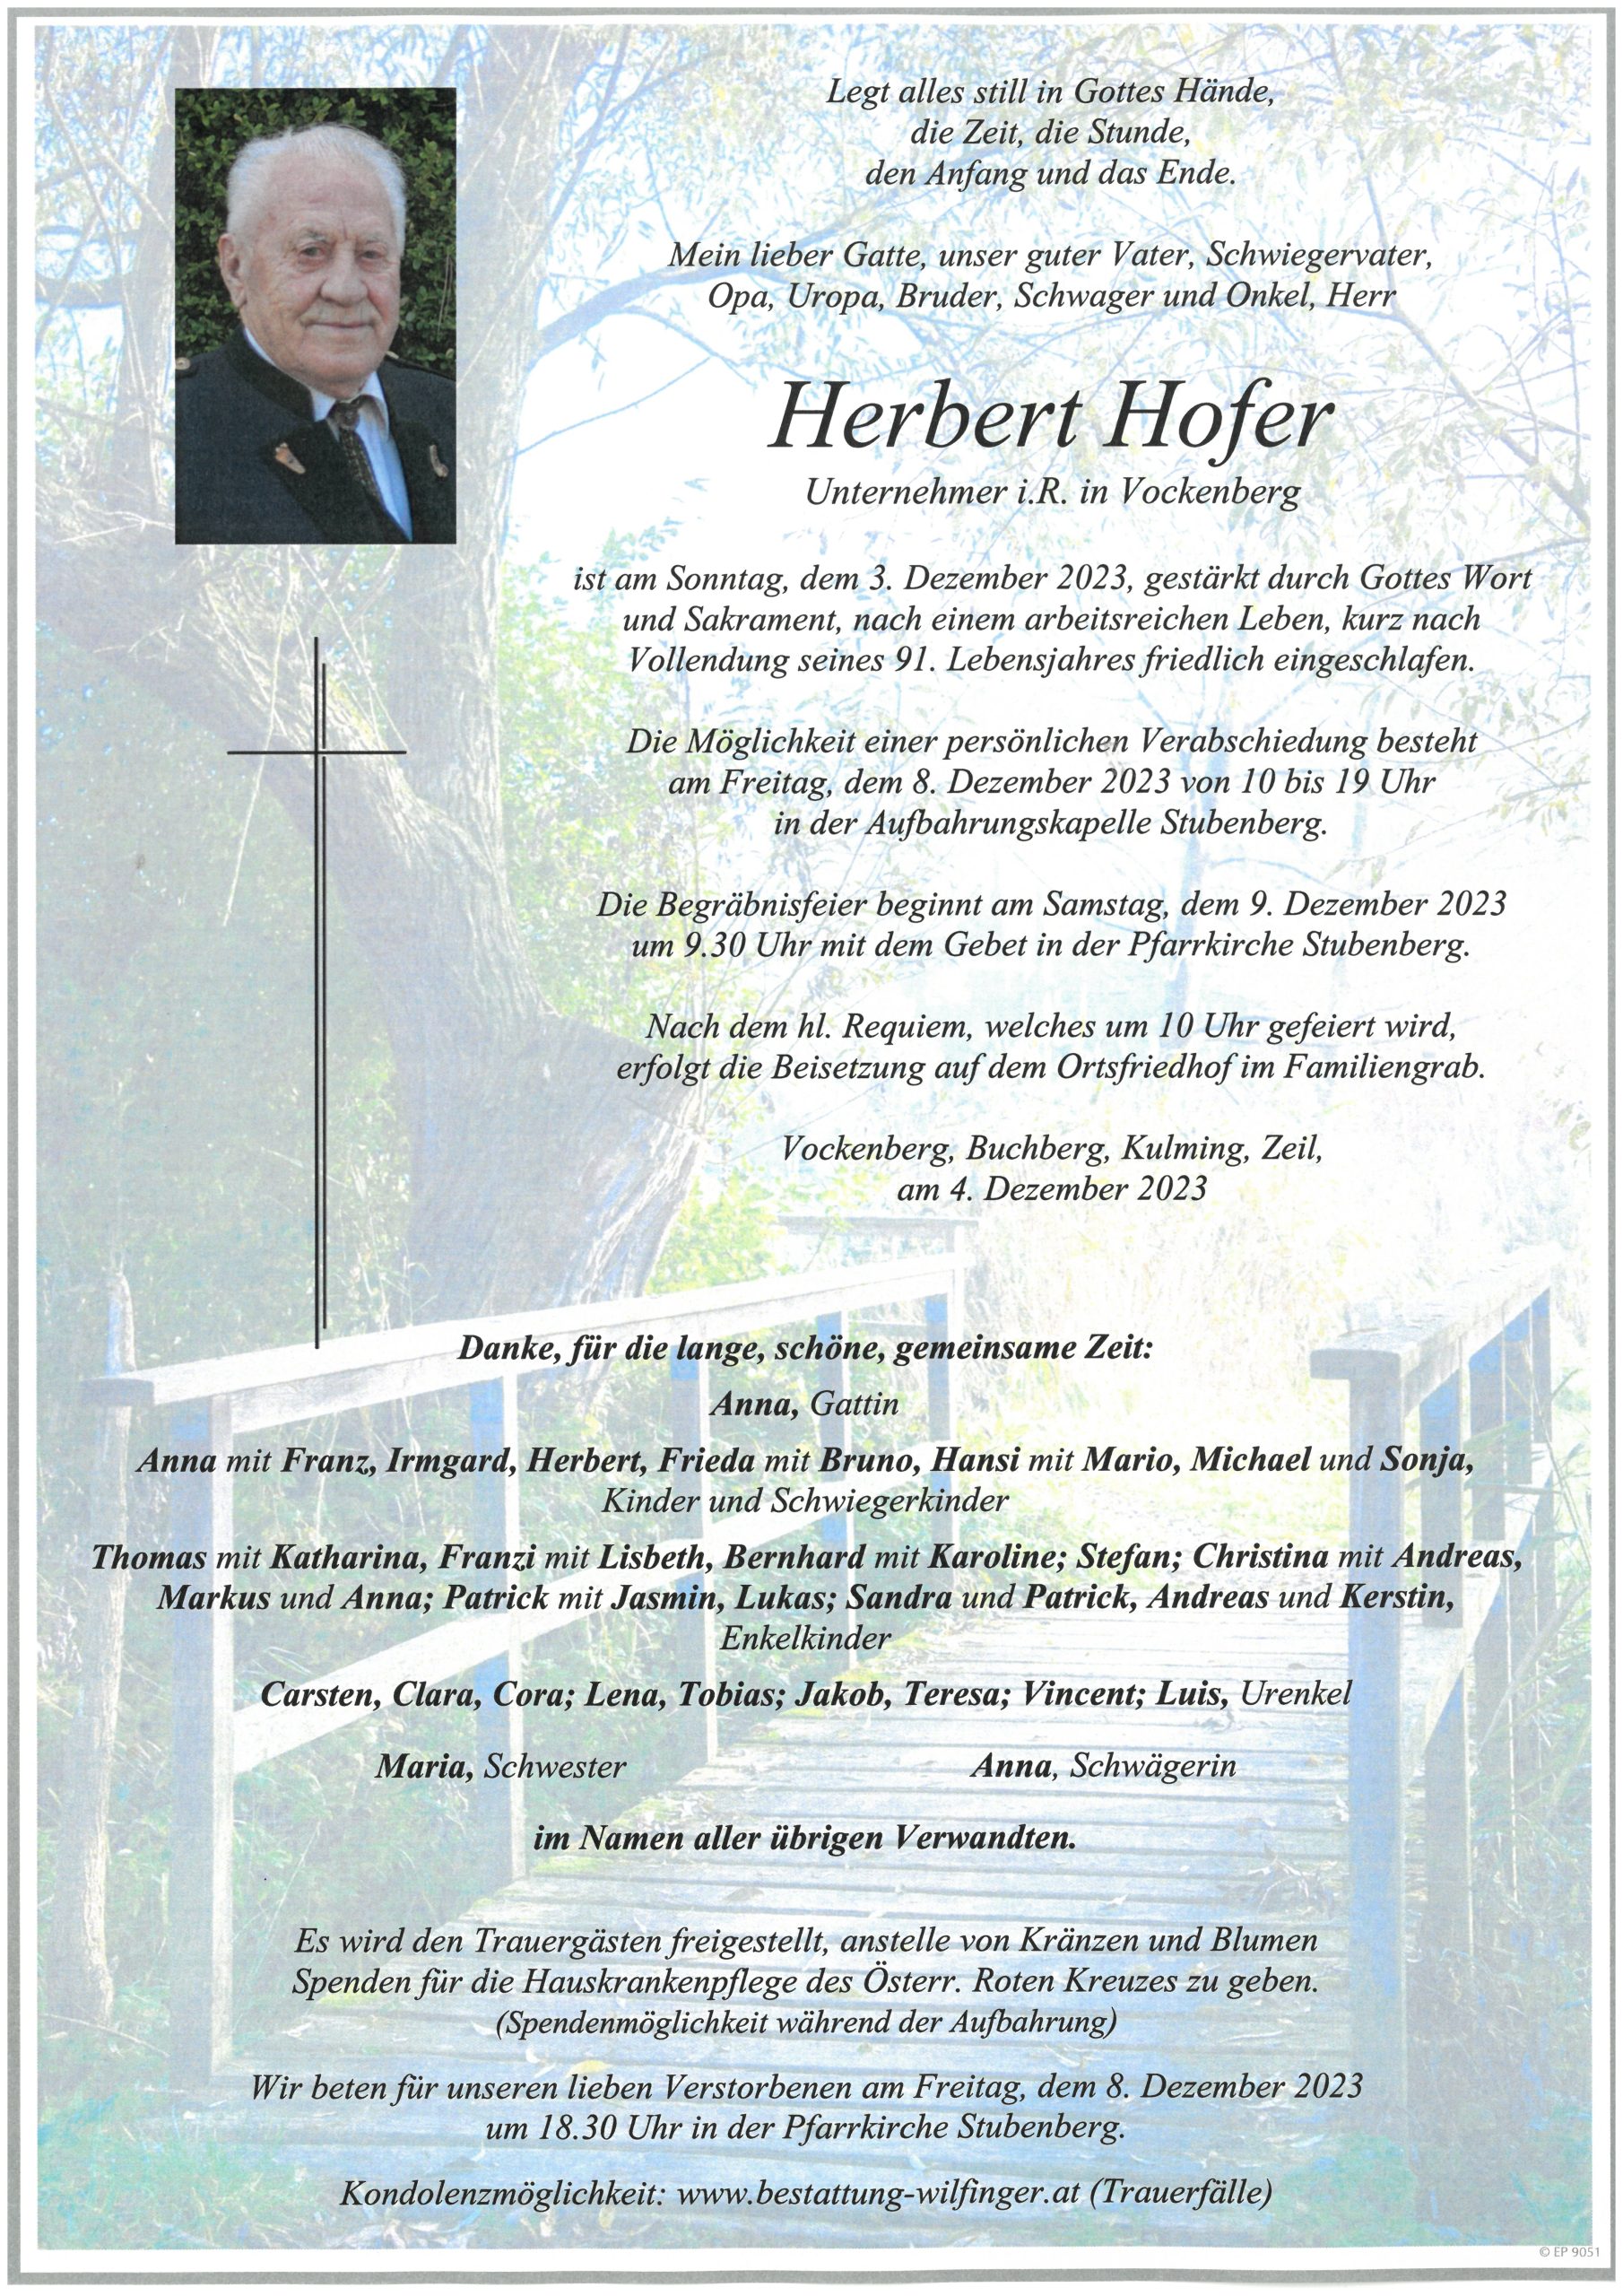 Herbert Hofer, Vockenberg